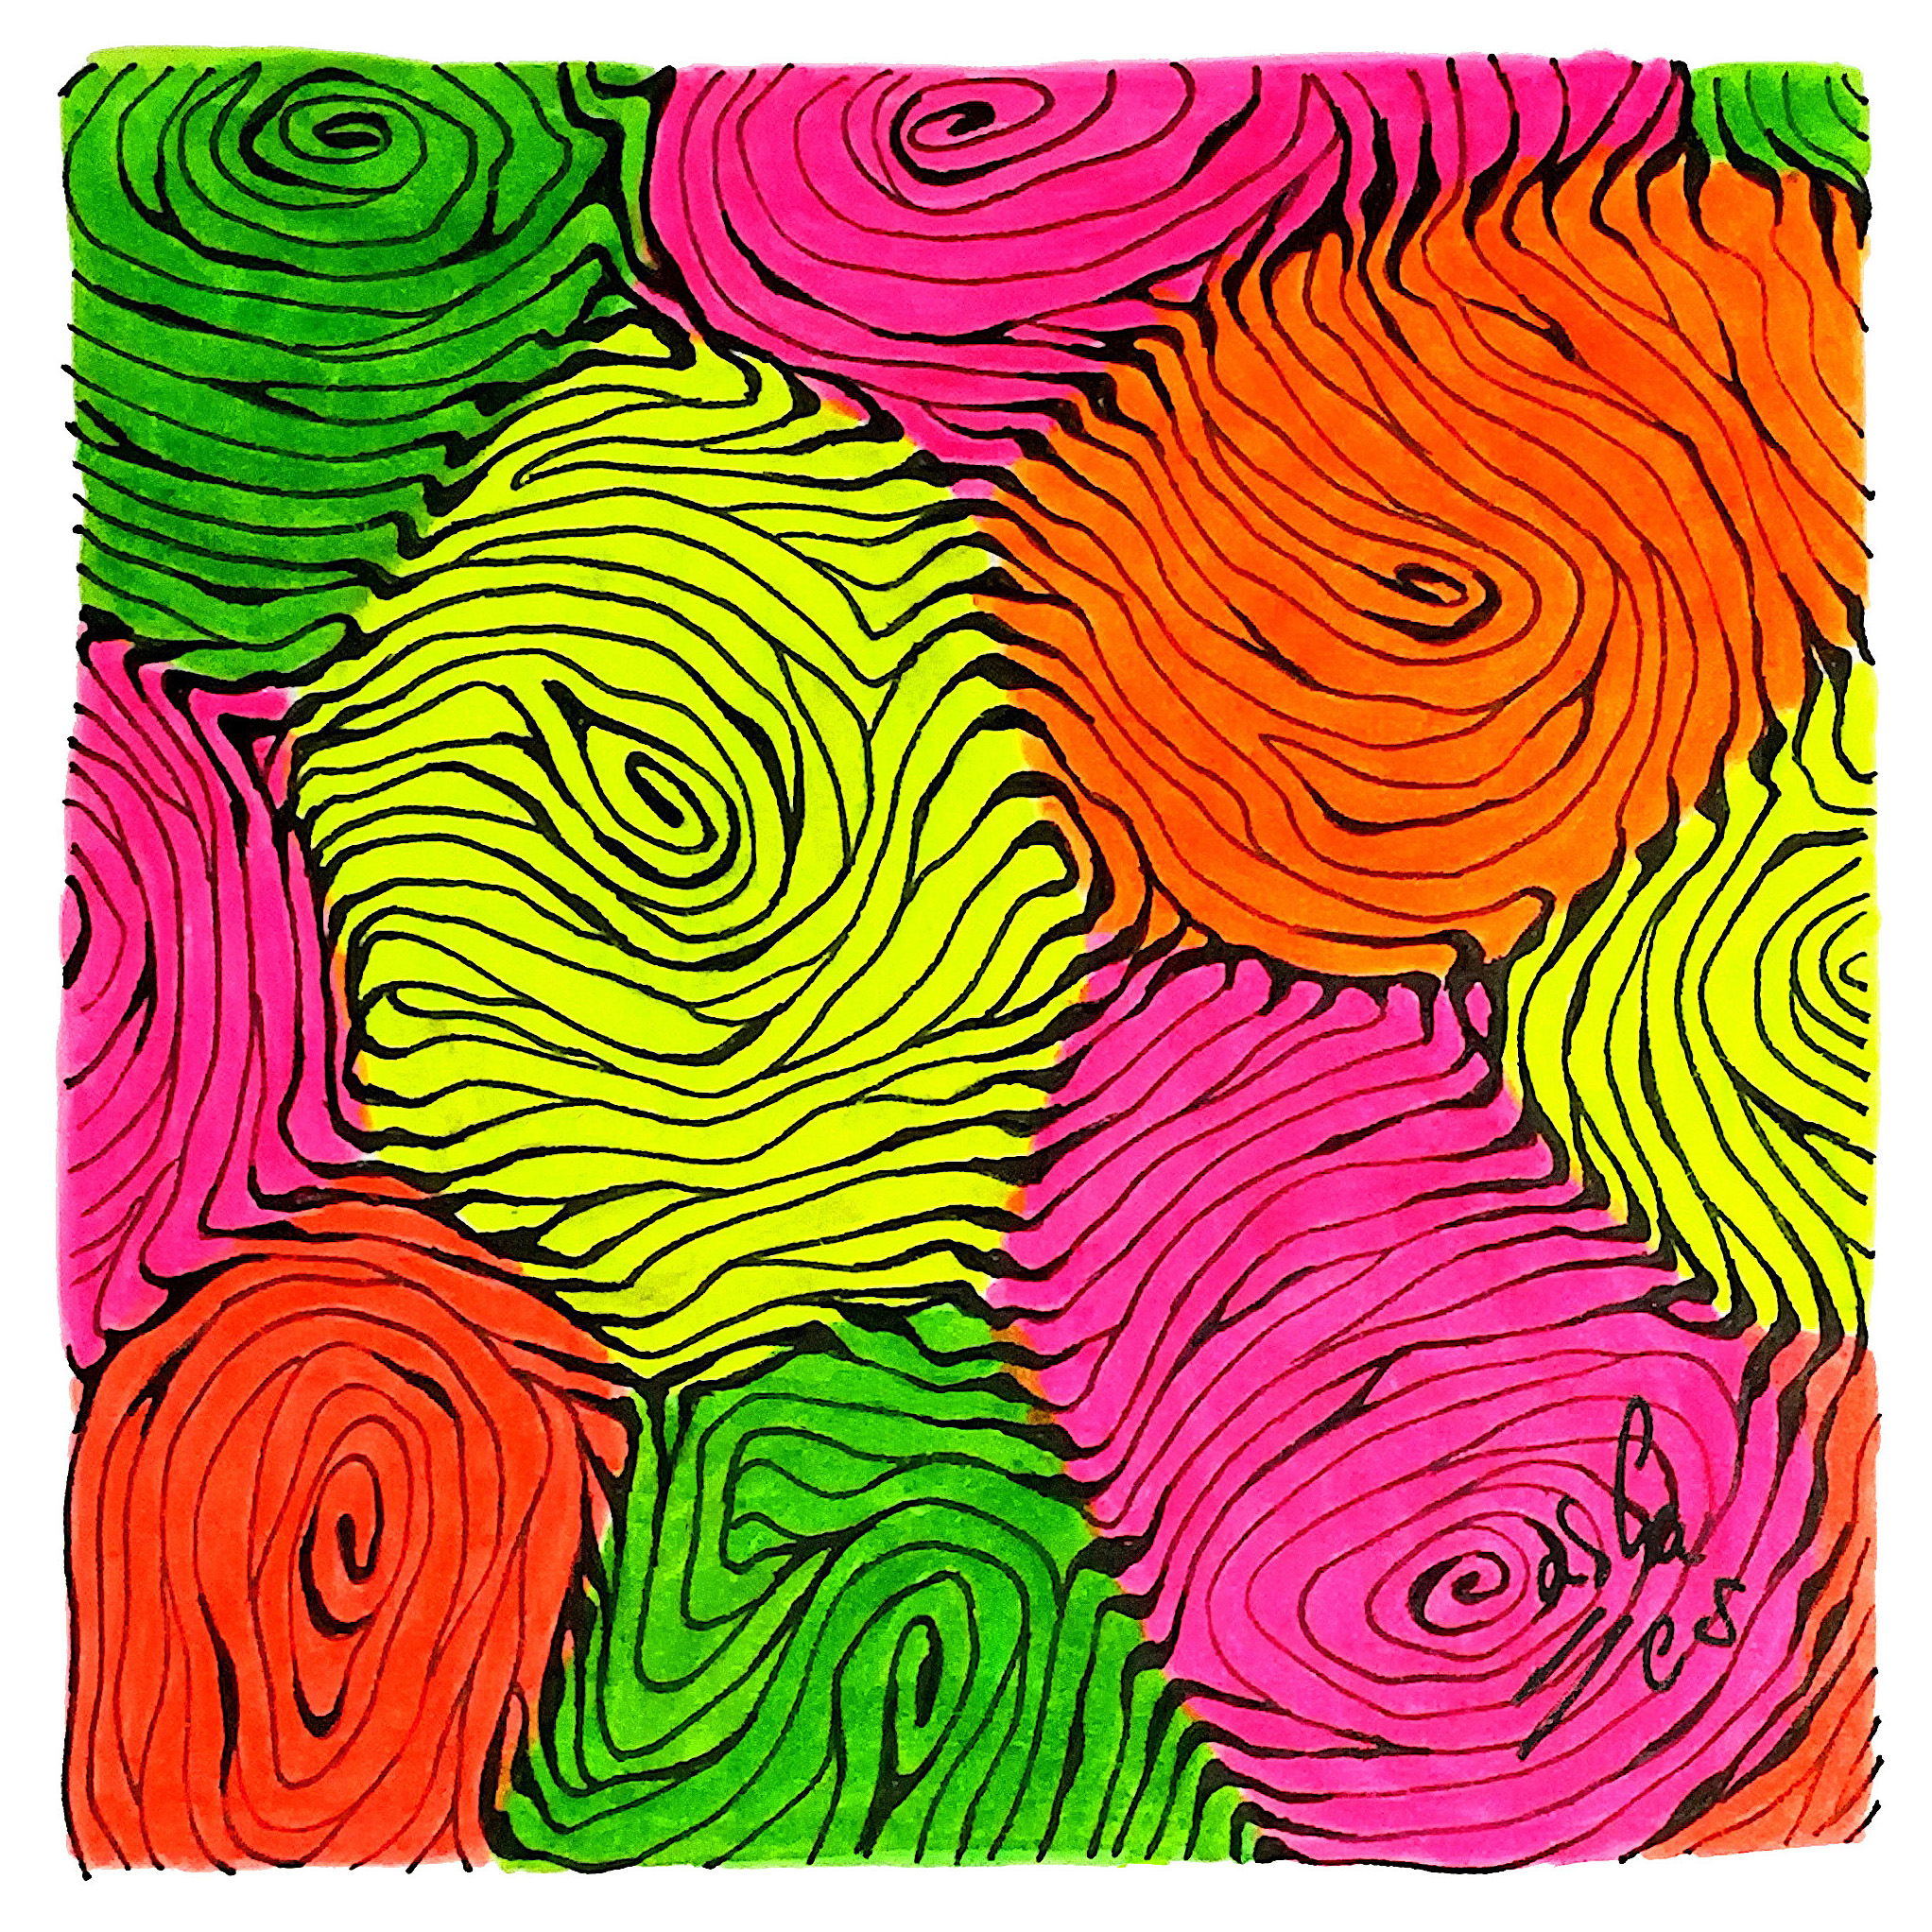 Huellas digitales troncos y curvas de nivel, Vicky Casellas, Ilustración fluorescente